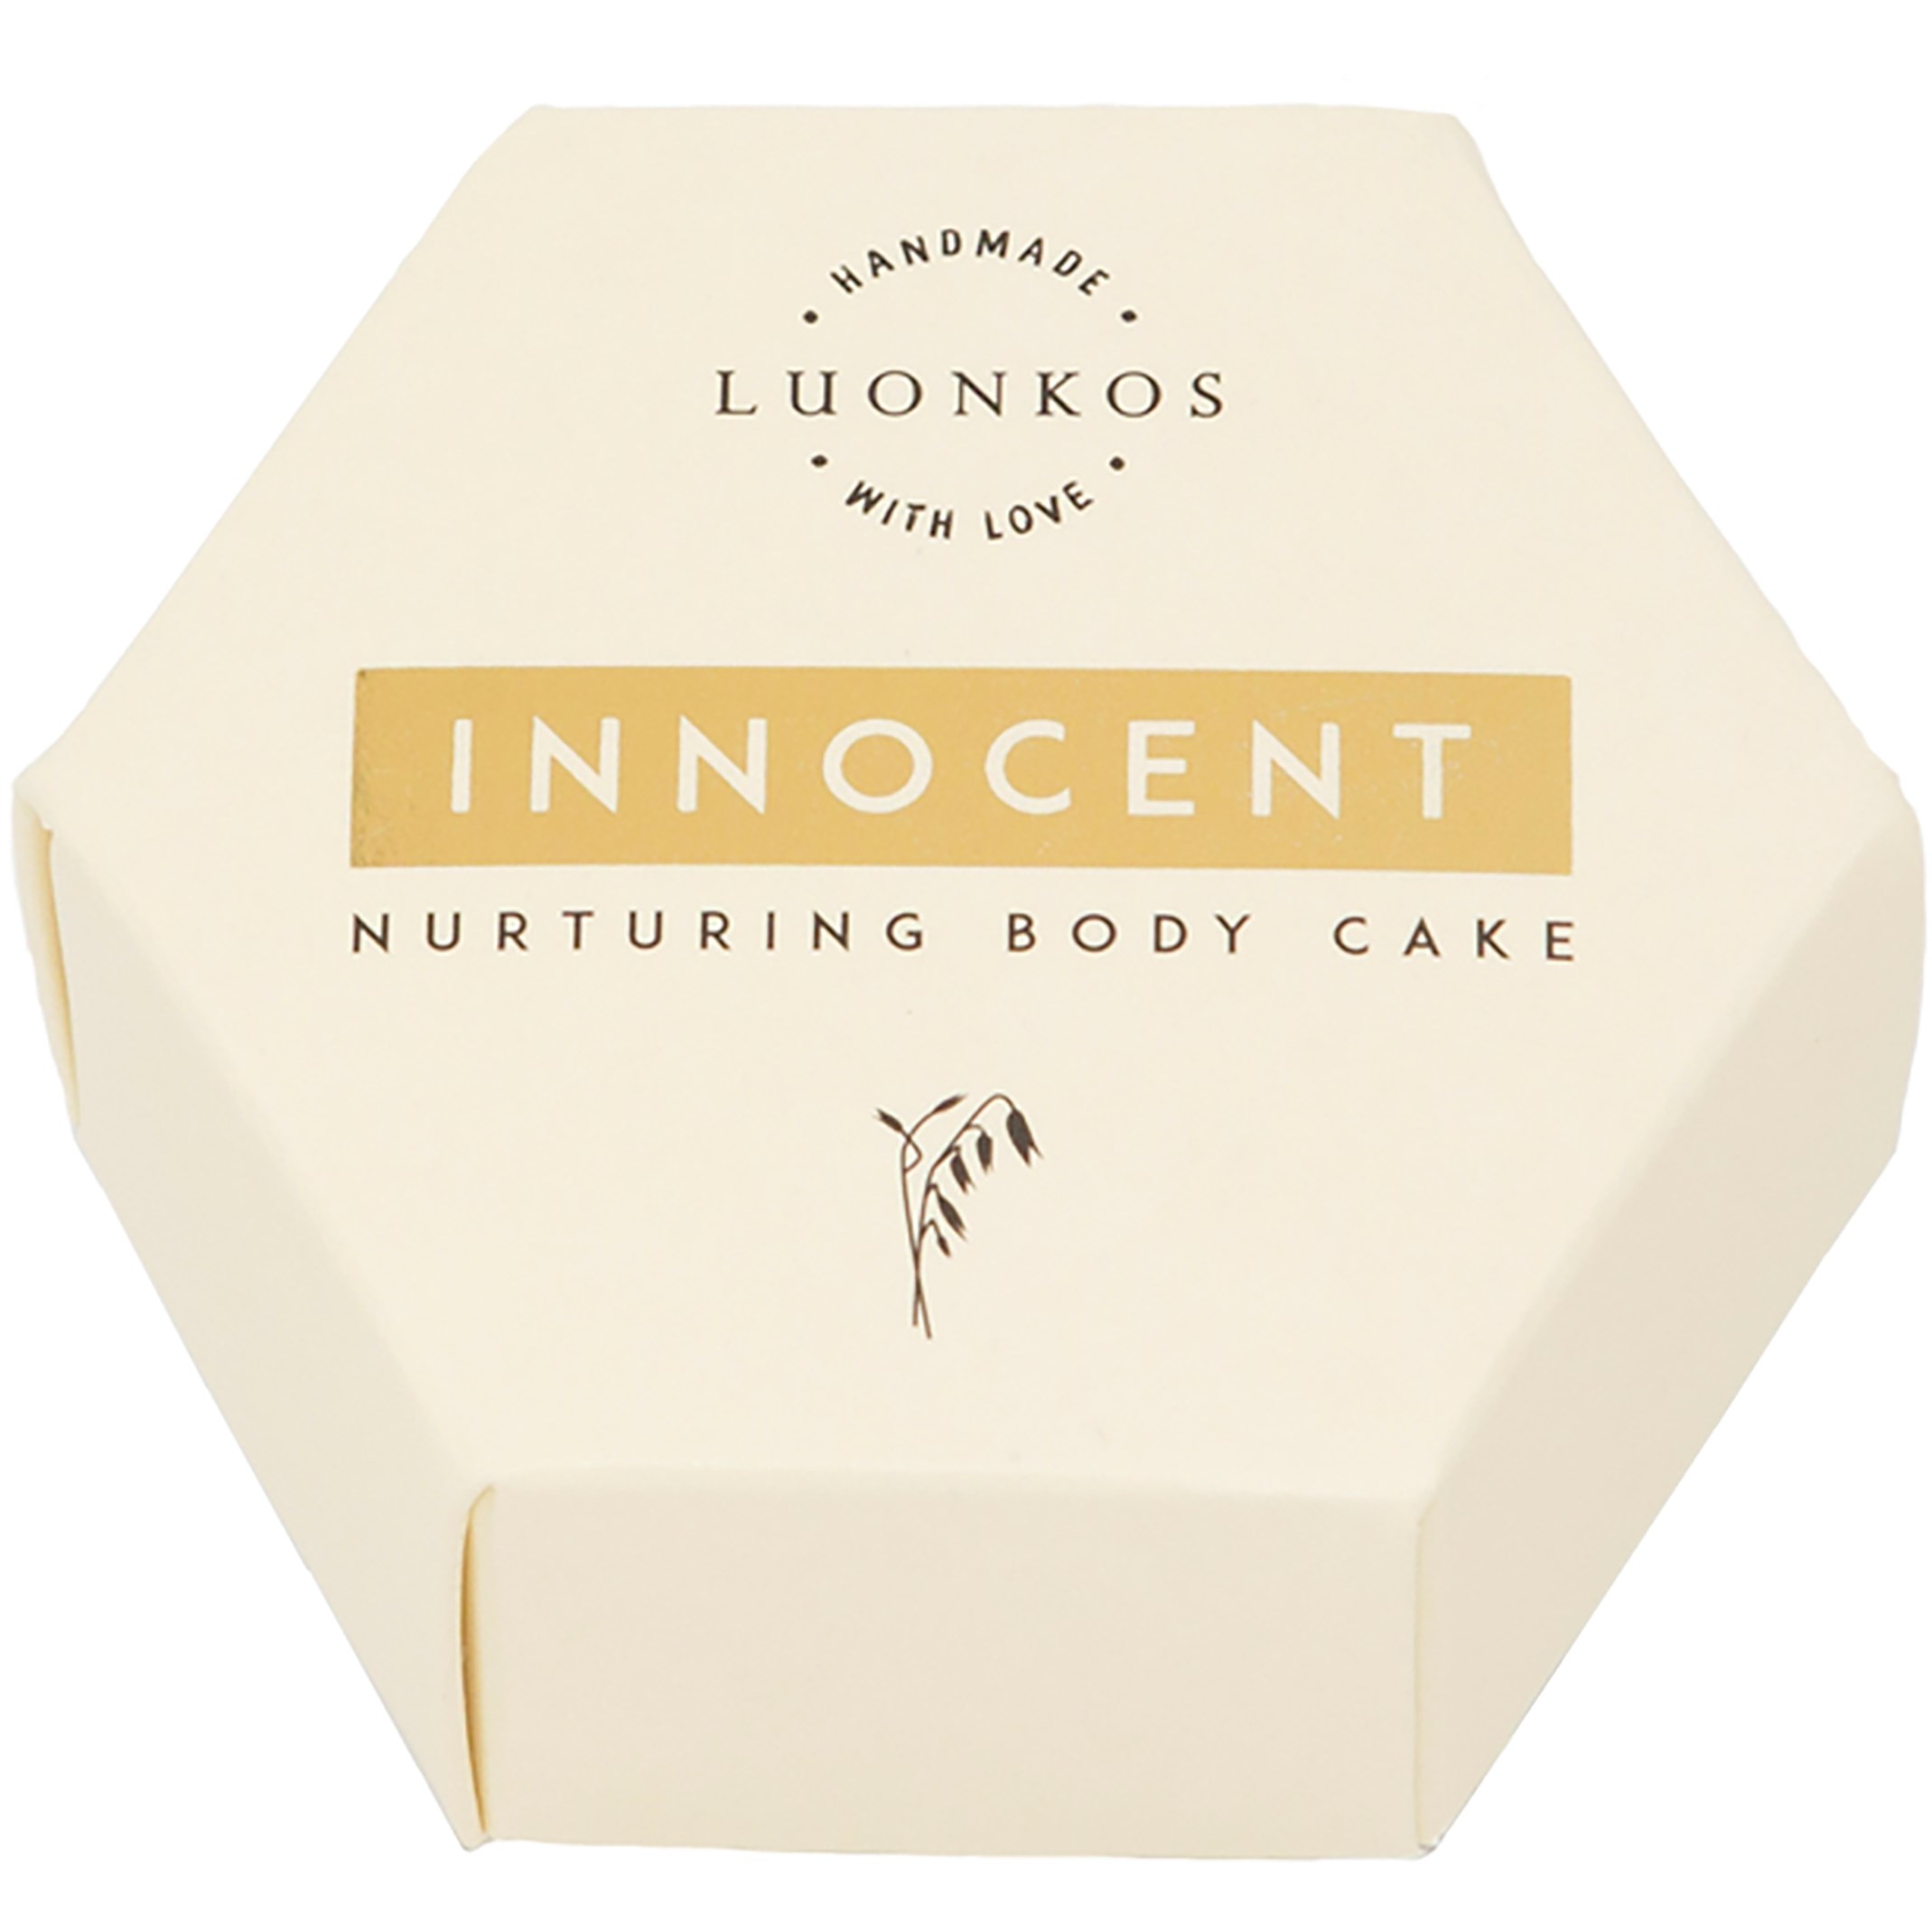 Luonkos Innocent Nurturing Body Oil Cake 60 g